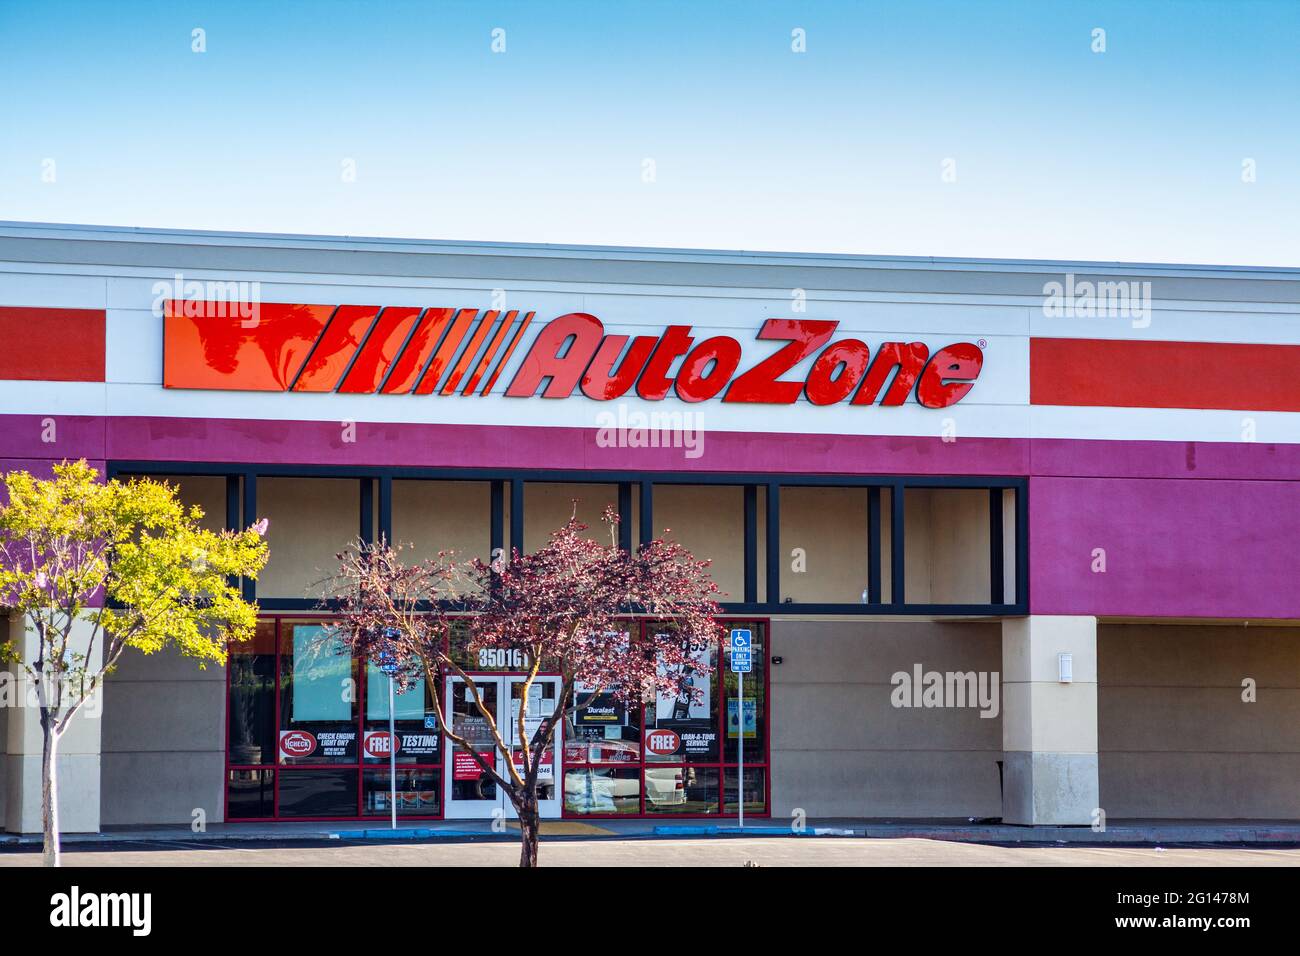 A 24 hour Auto Zone auto parts store in Modesto California Stock Photo -  Alamy